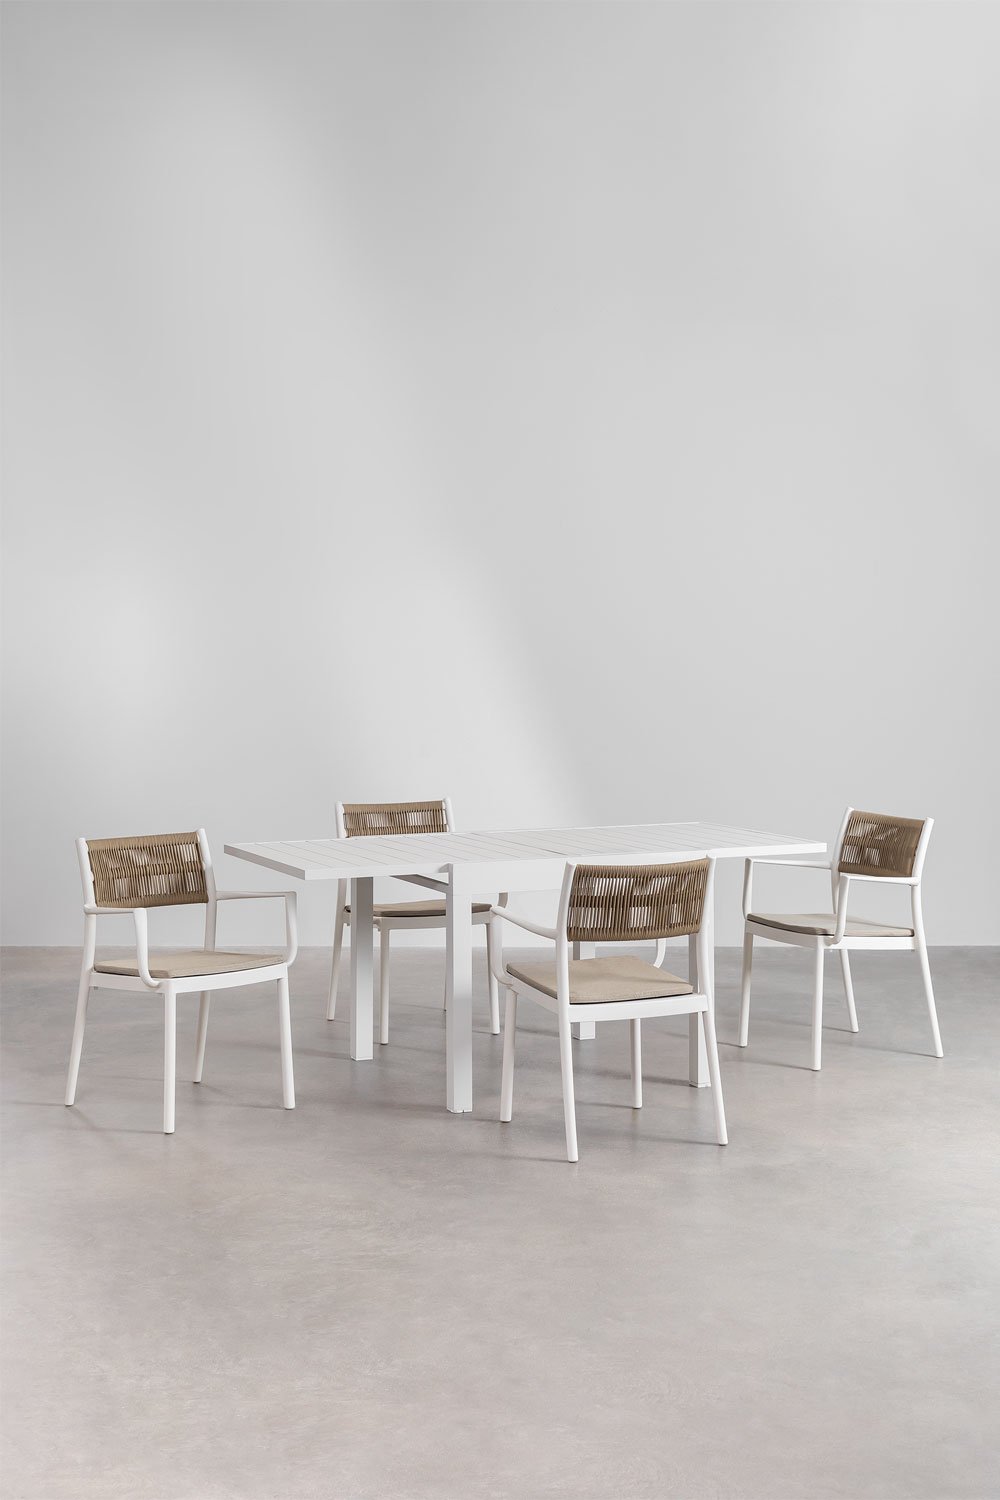 Set aus ausziehbarem rechteckigem Aluminiumtisch von Starmi (90–180 x 90 cm) und 4 stapelbaren Gartenstühlen von Favila mit Arml, Galeriebild 1